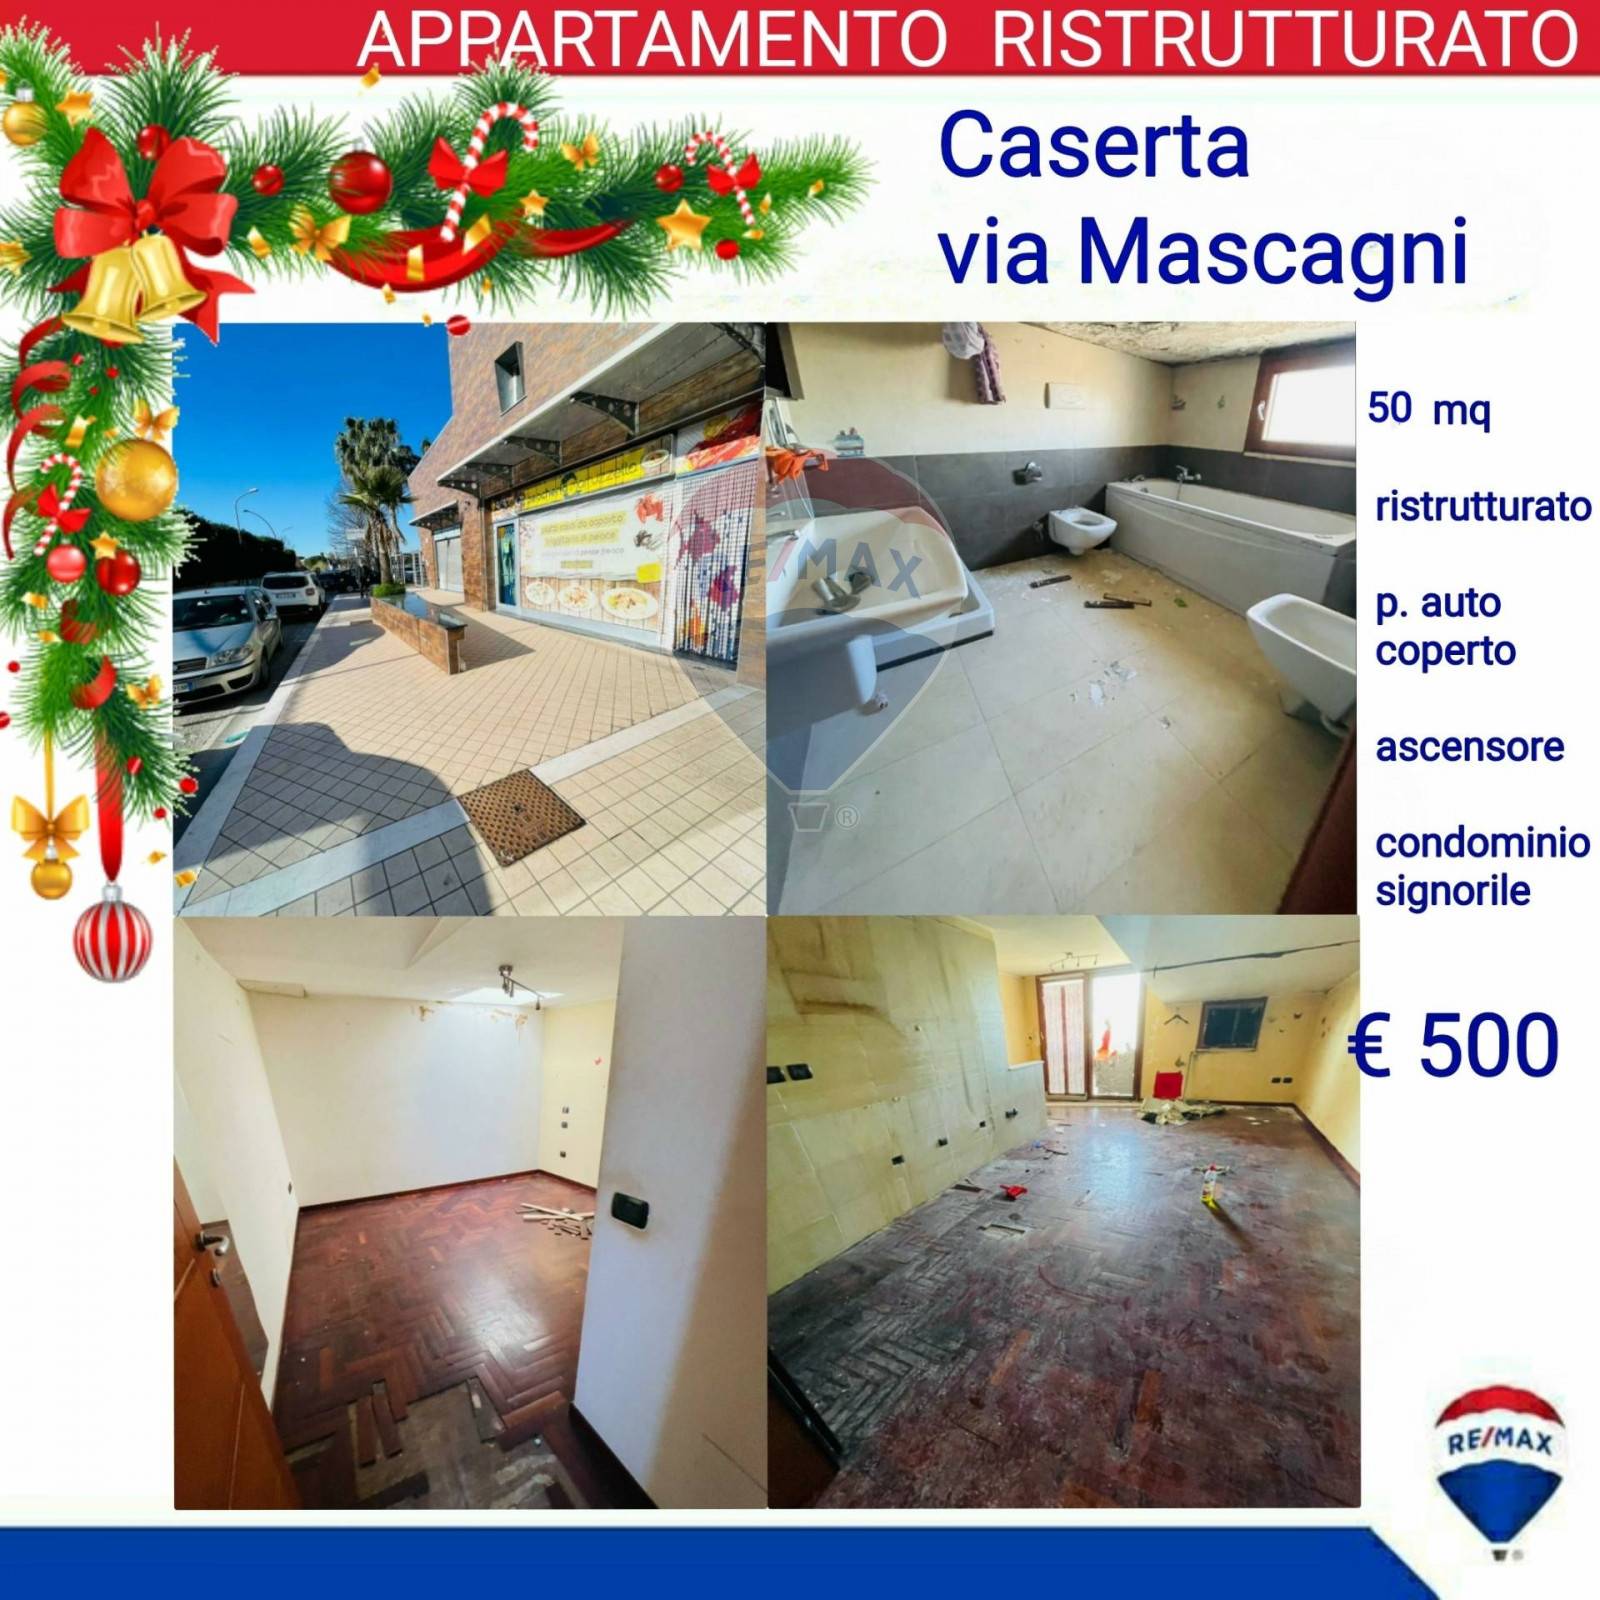 Appartamento in affitto a Caserta, 2 locali, zona Zona: Centro, prezzo € 500 | CambioCasa.it